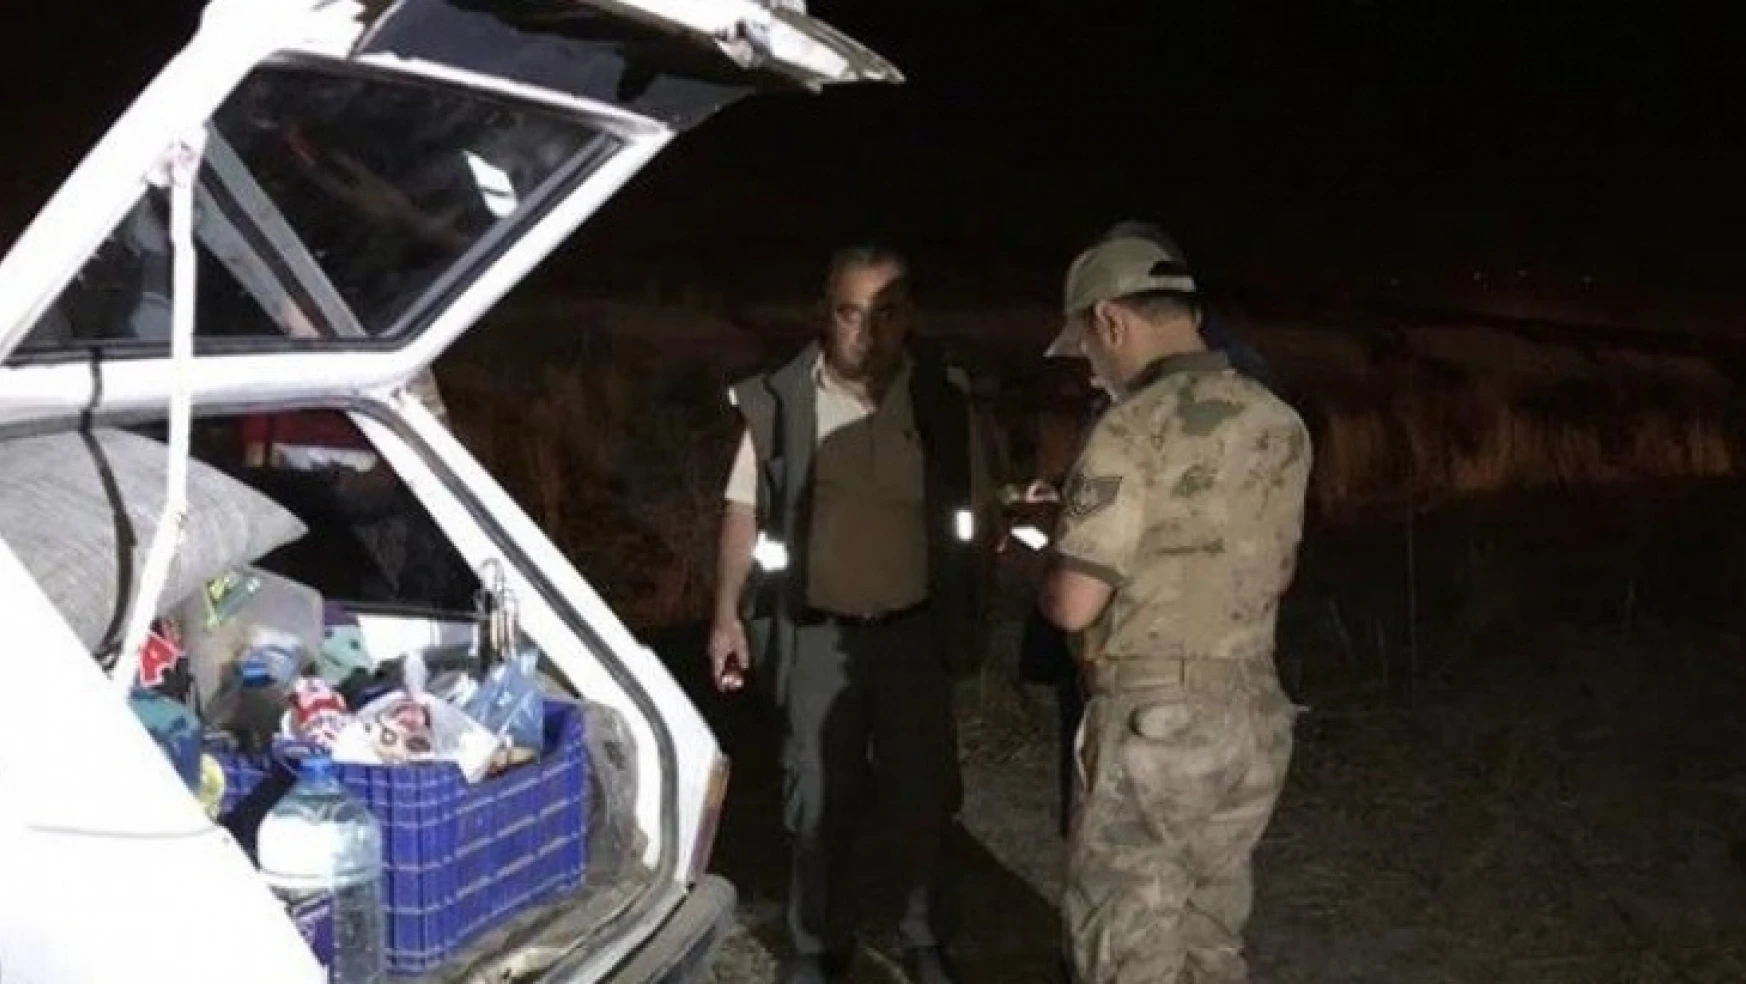 Suriyeli 4 Şahıs, Yasak Cihazla Bıldırcın Avı Yaparken Yakalandı